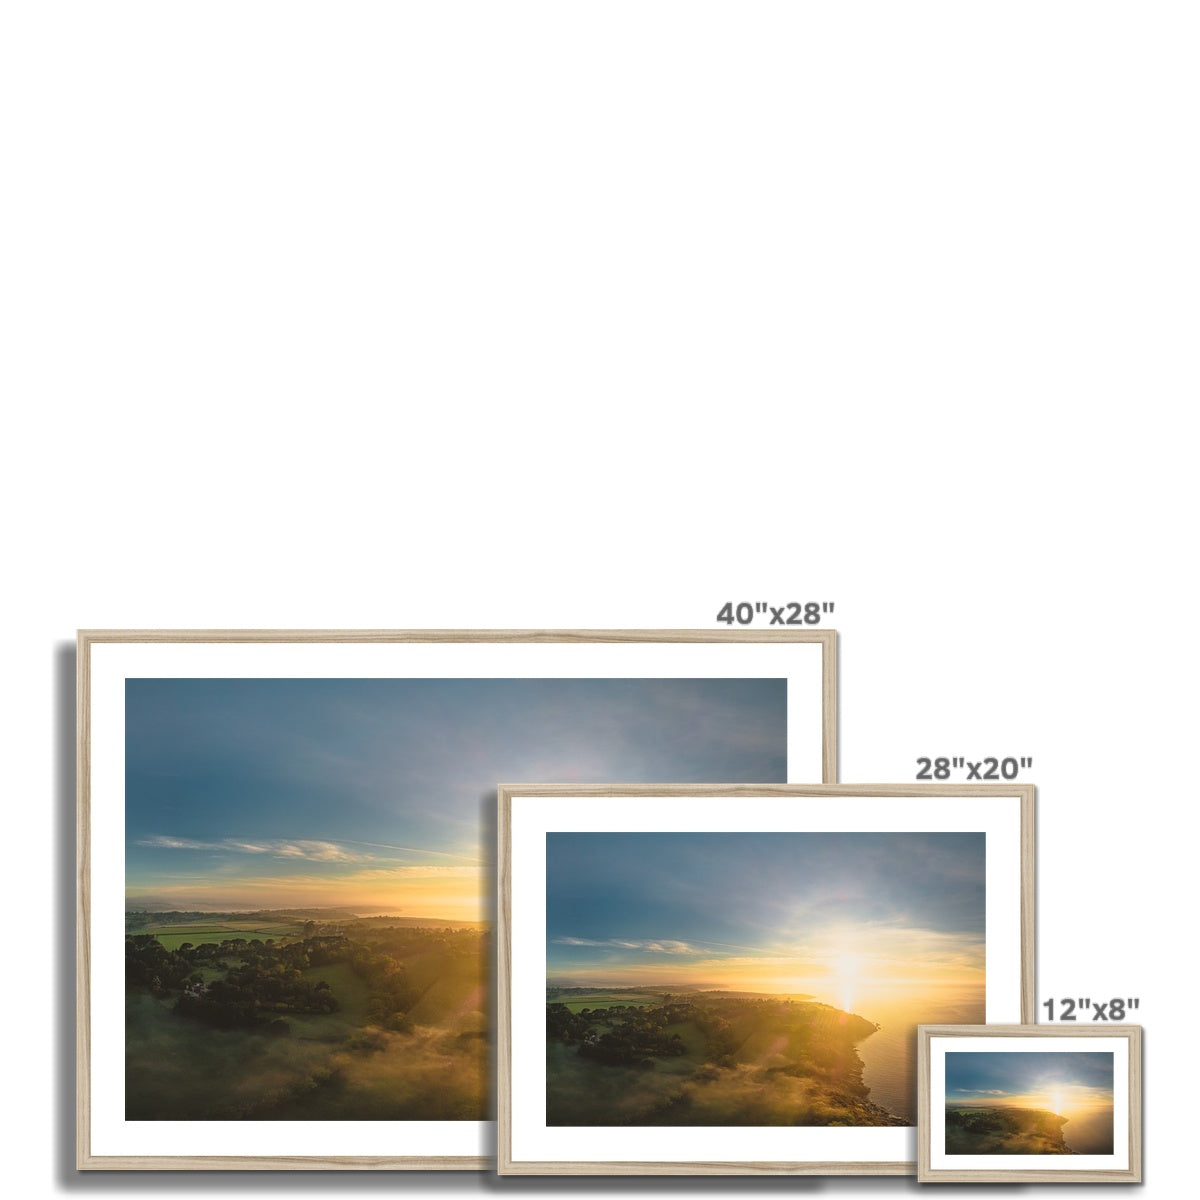 helford dawn frame sizes